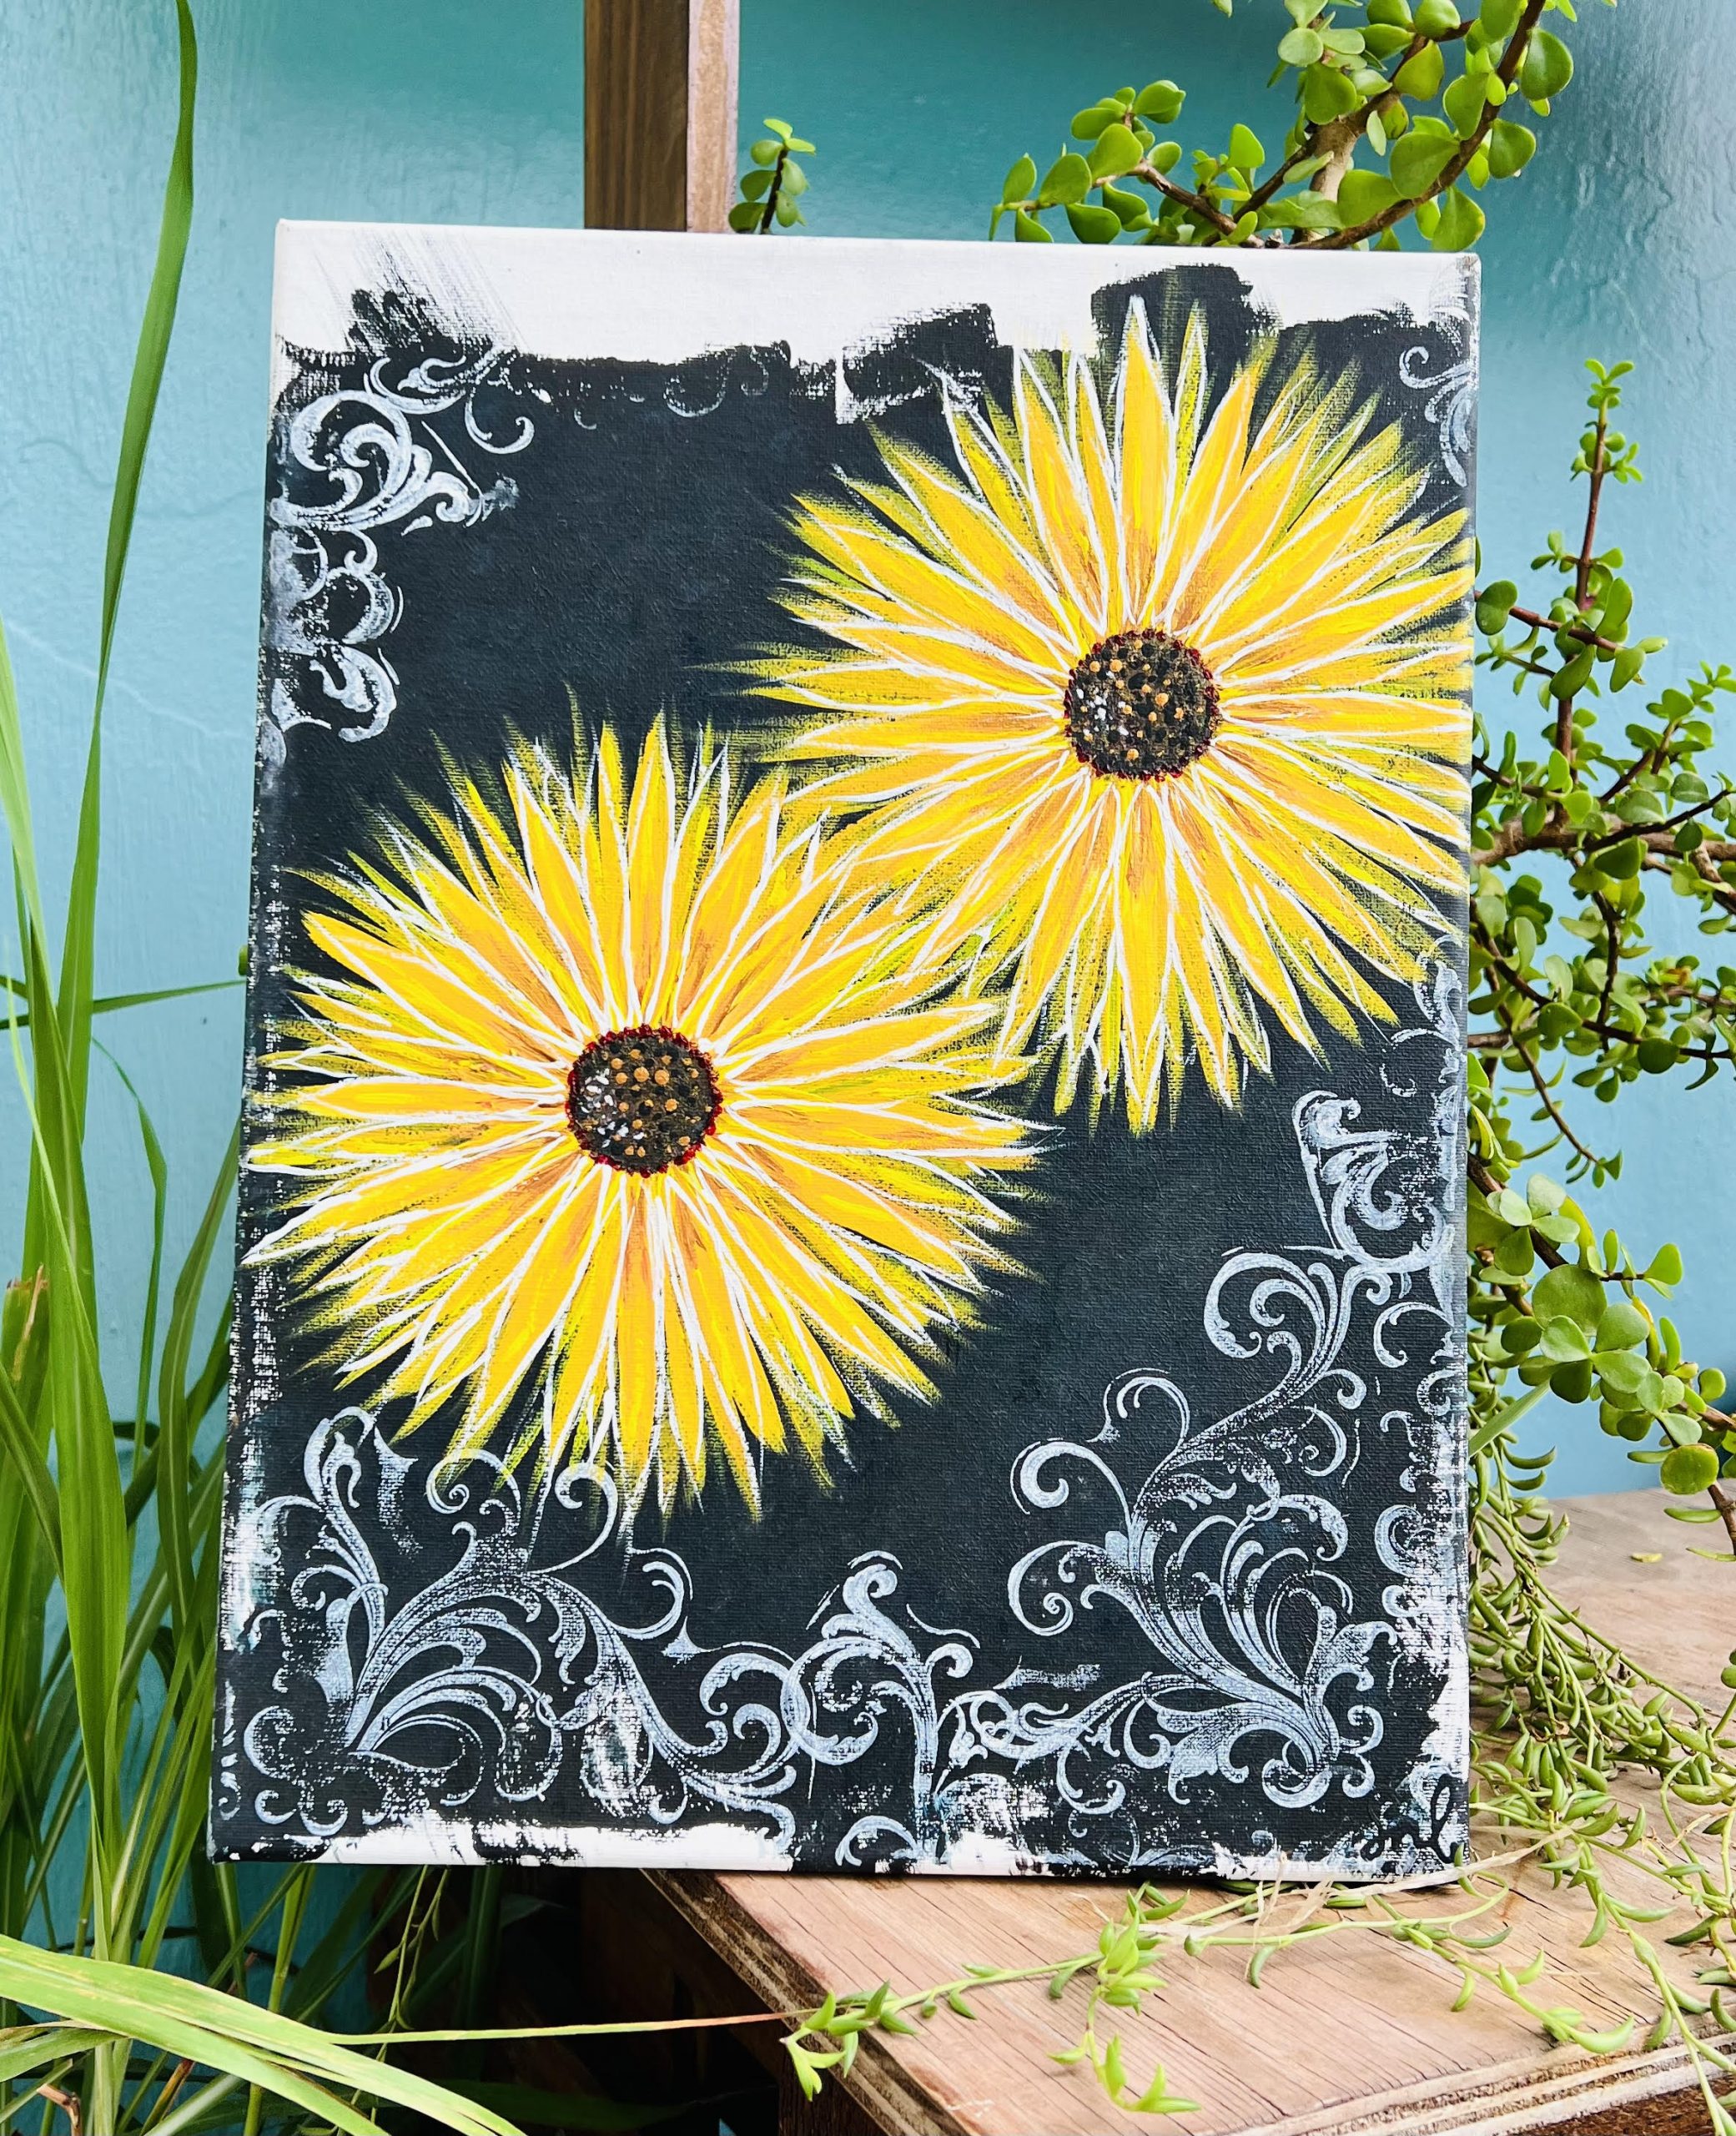 Sunflower Cocktail Hour Acrylic on Canvas Painting Class at ArtSea Living in Boynton Beach, Florida